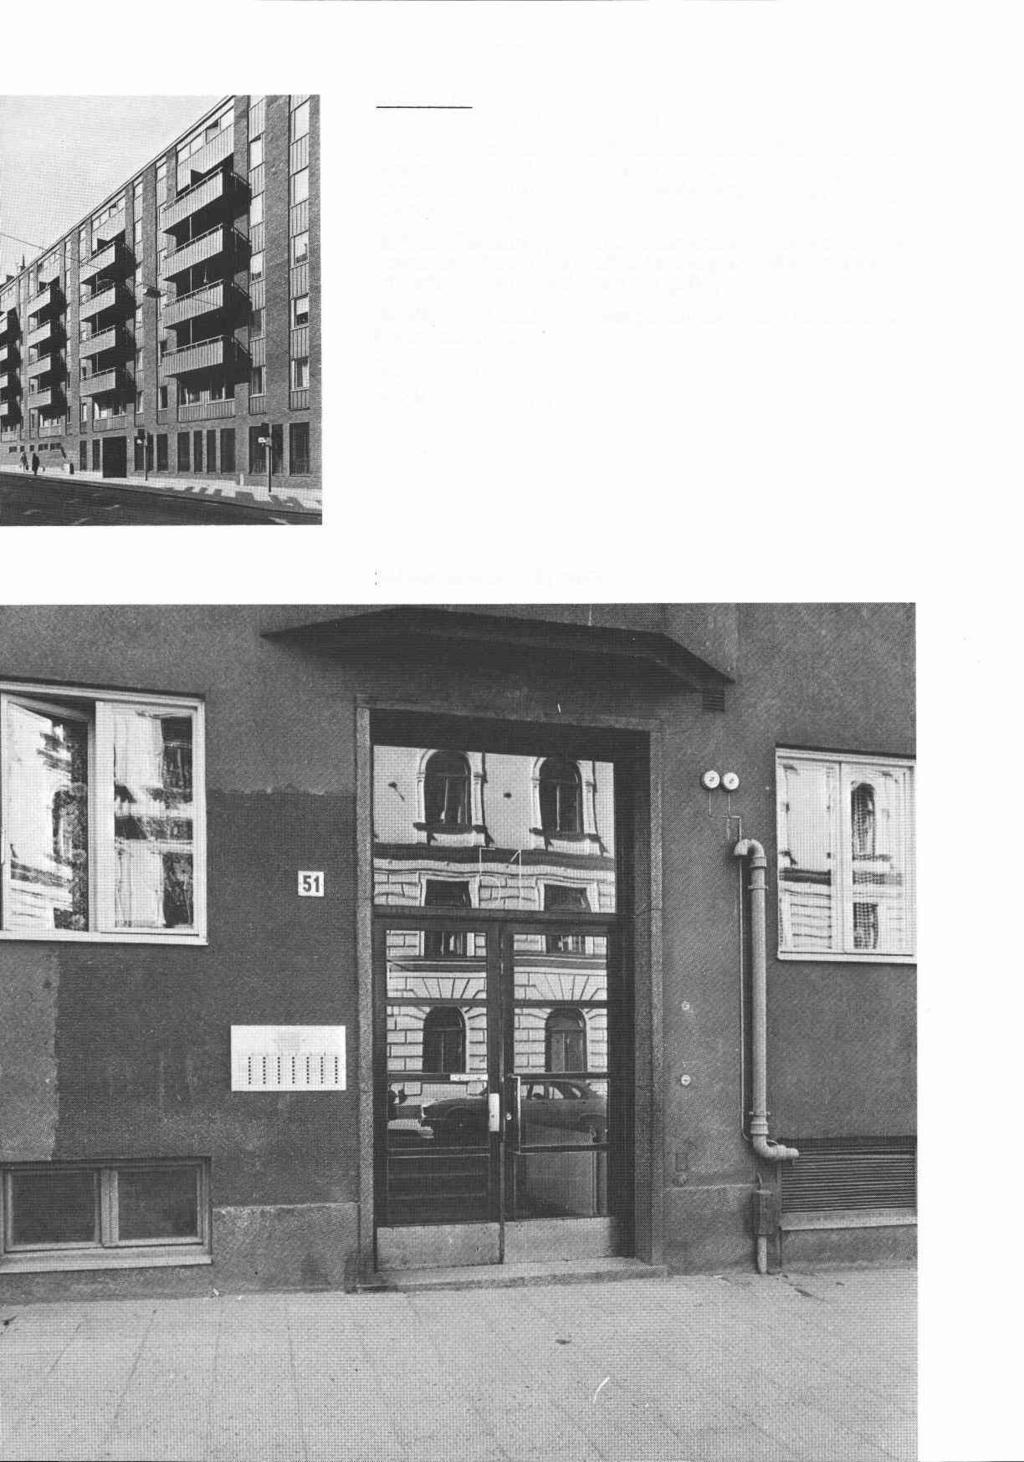 Kumlet 24 Linnégatan 61, Grevgatan 45 Bostadsfastighet (pensionärsbostäder),inventerad 197 ~~~~nadsår 1971, arkitekt